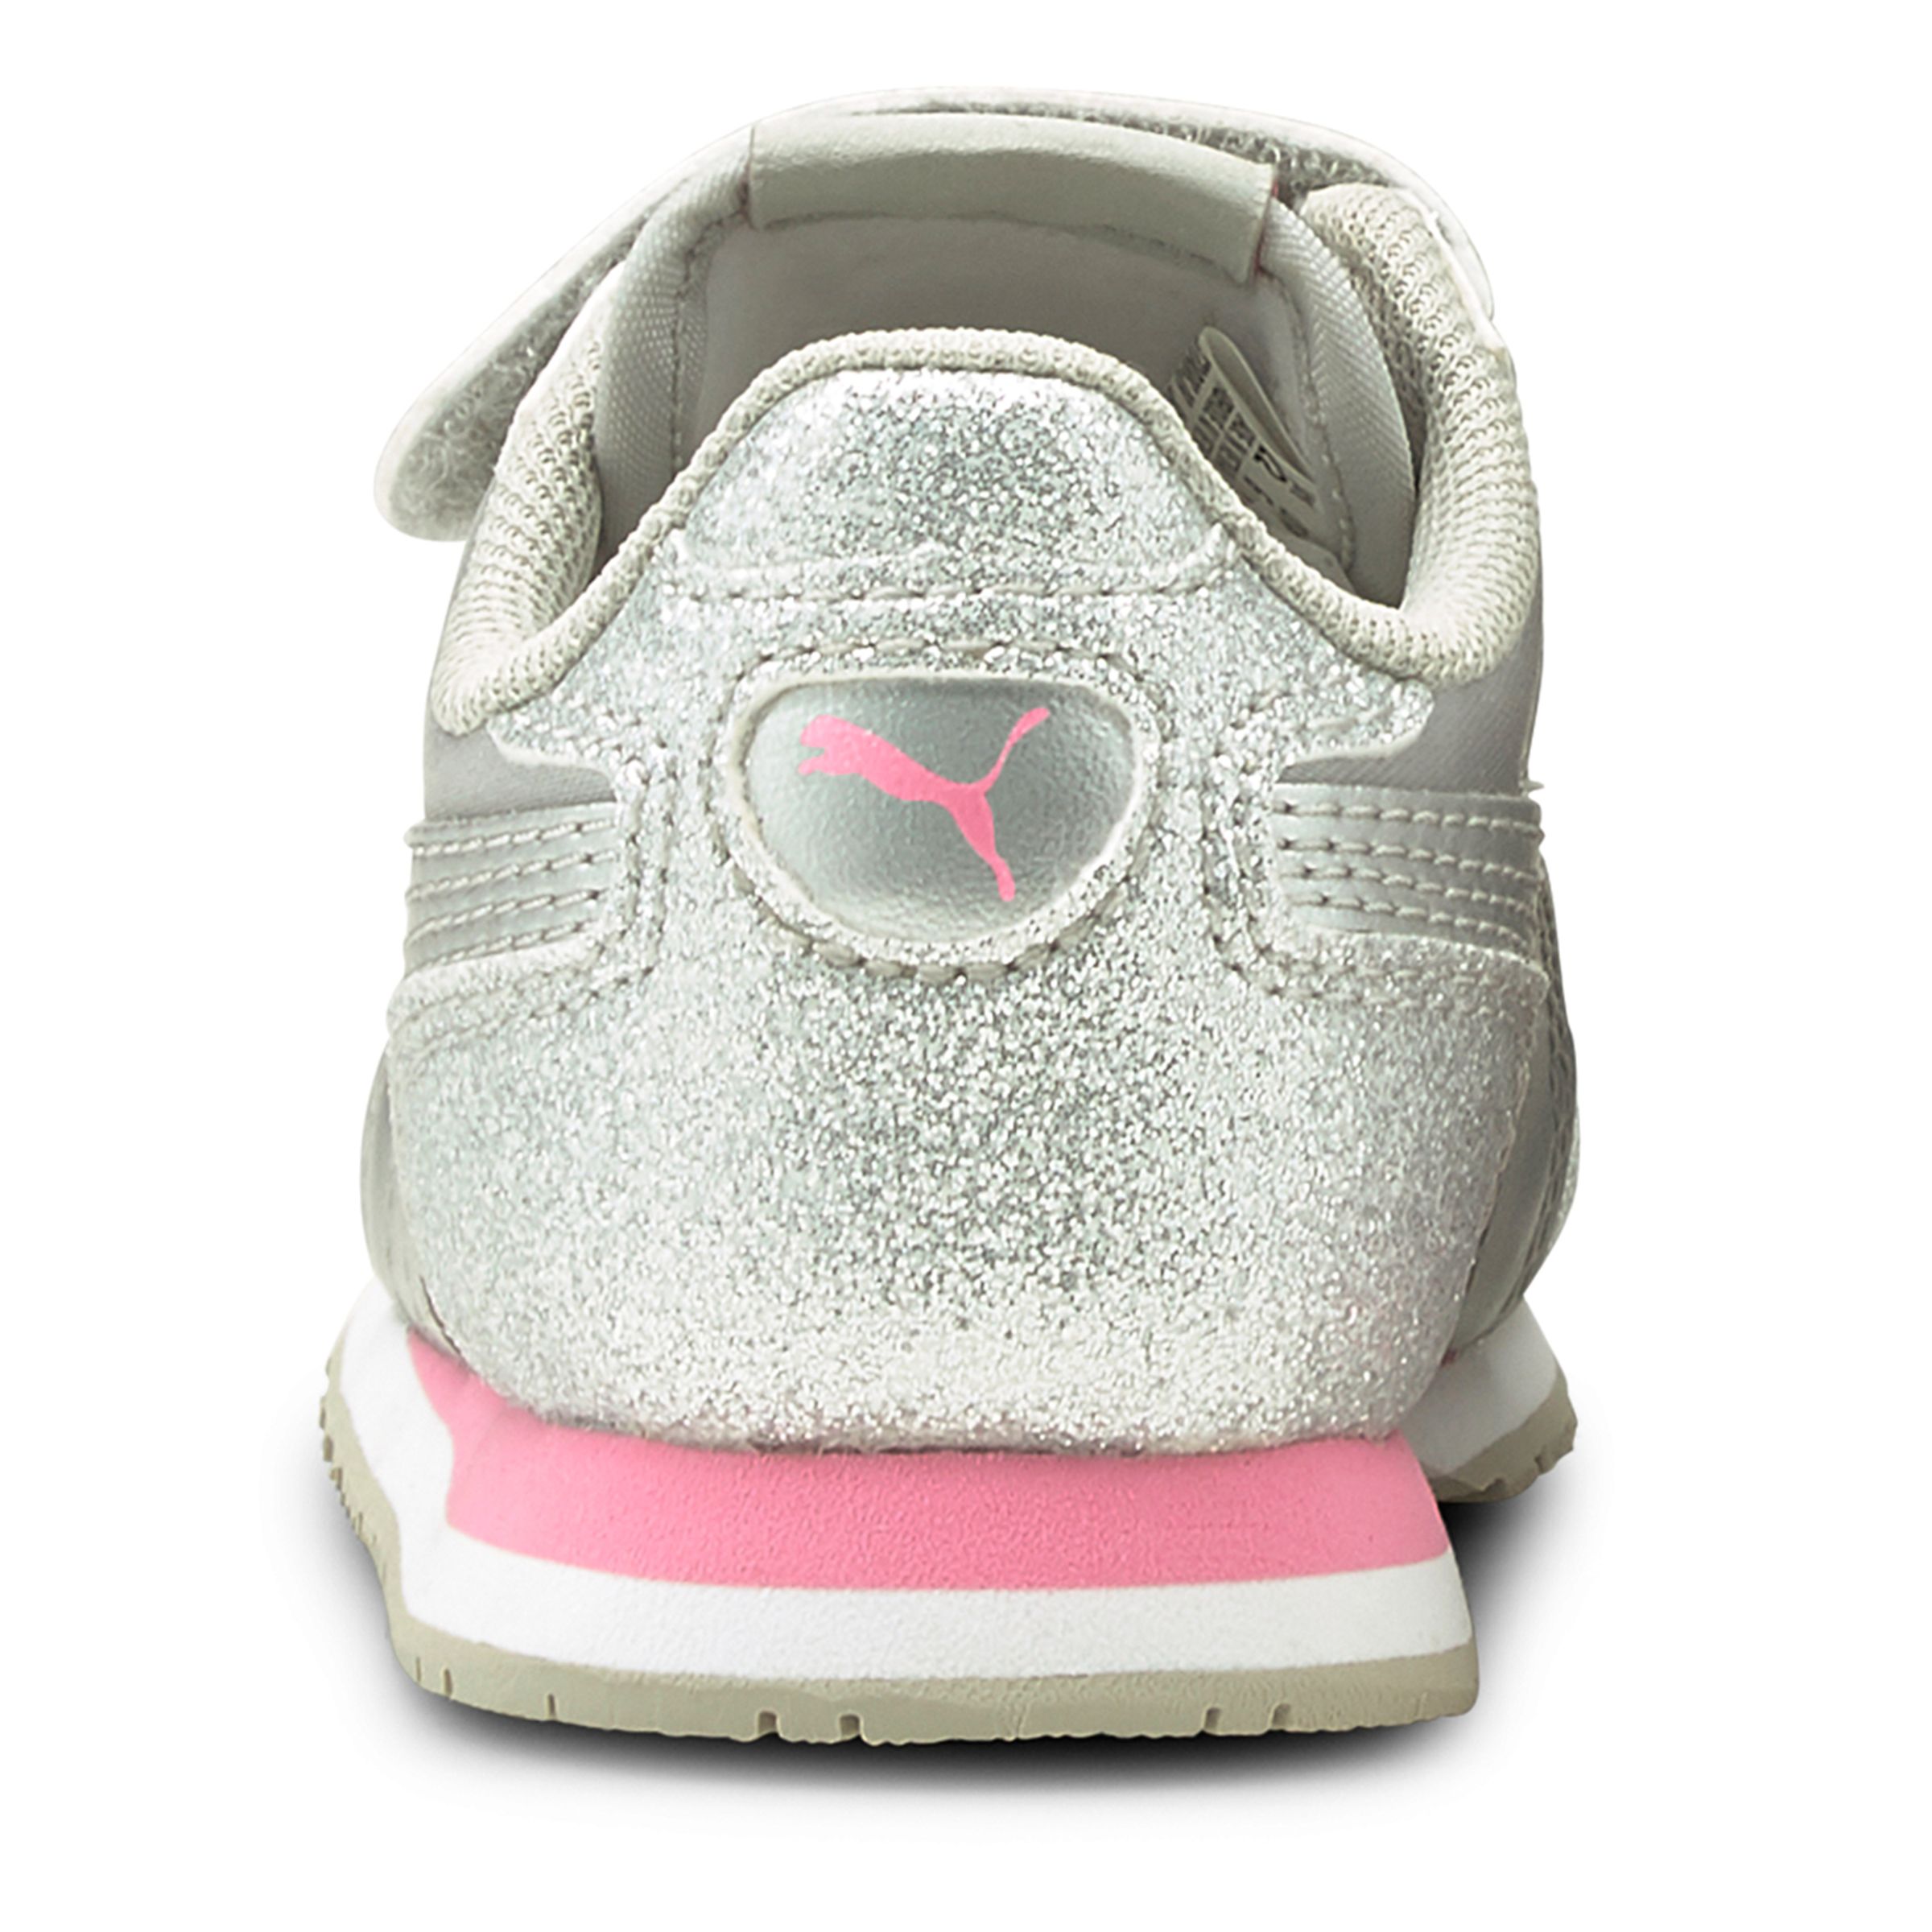 PUMA Cabana Racer Glitz V PS Inf Sneaker Schuhe Baby Mädchen 370986 silber